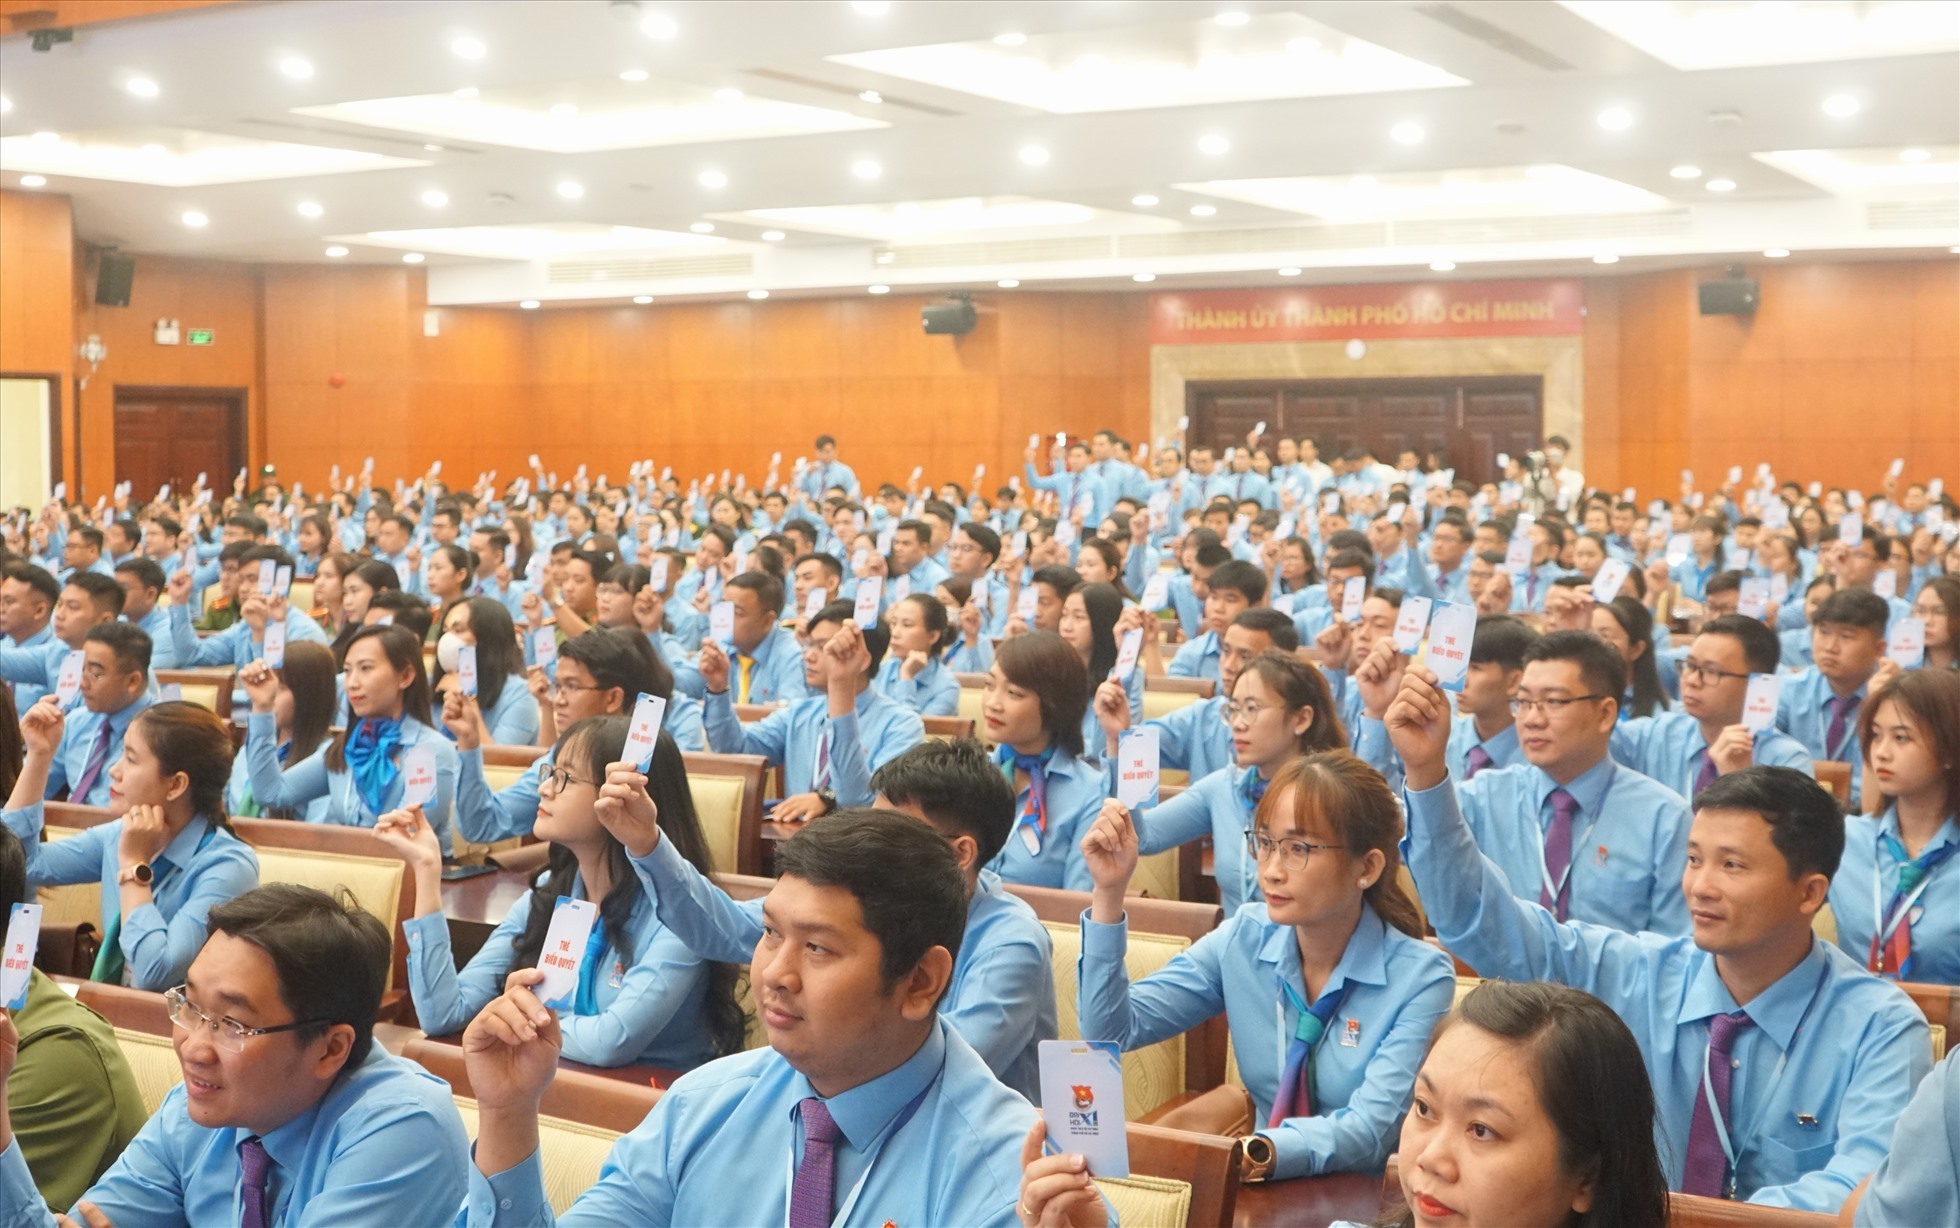 Đại hội đại biểu Đoàn TNCS Hồ Chí Minh TPHCM lần thứ XI với sự tham gia của 441 đại biểu đại diện cho hơn 750.000 đoàn viên, đến từ 116 cơ sở Đoàn trực thuộc. Ảnh: Thanh Chân